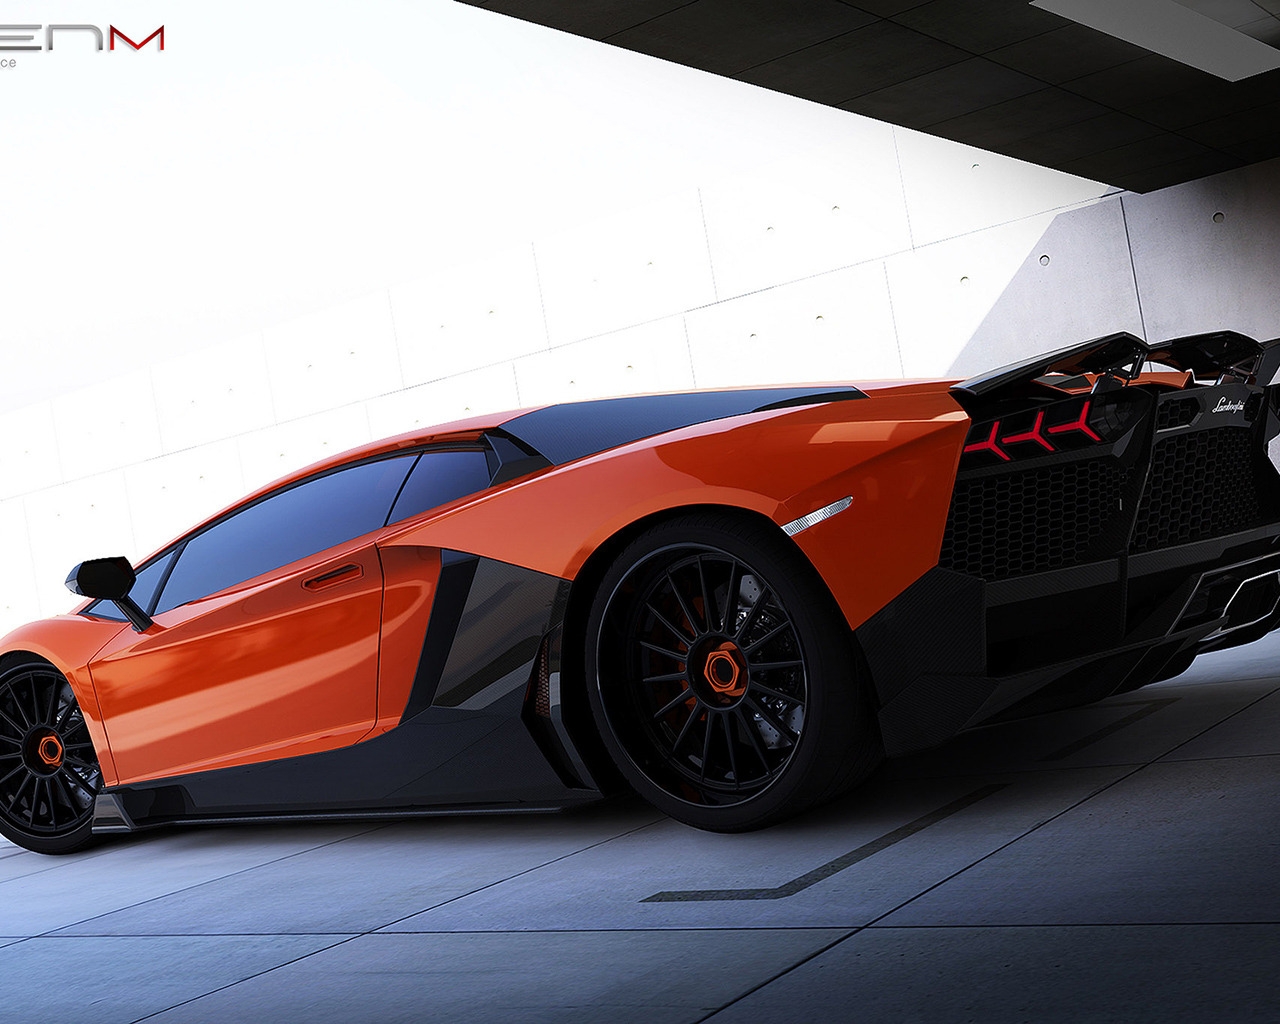 Renm Lamborghini Aventador for 1280 x 1024 resolution